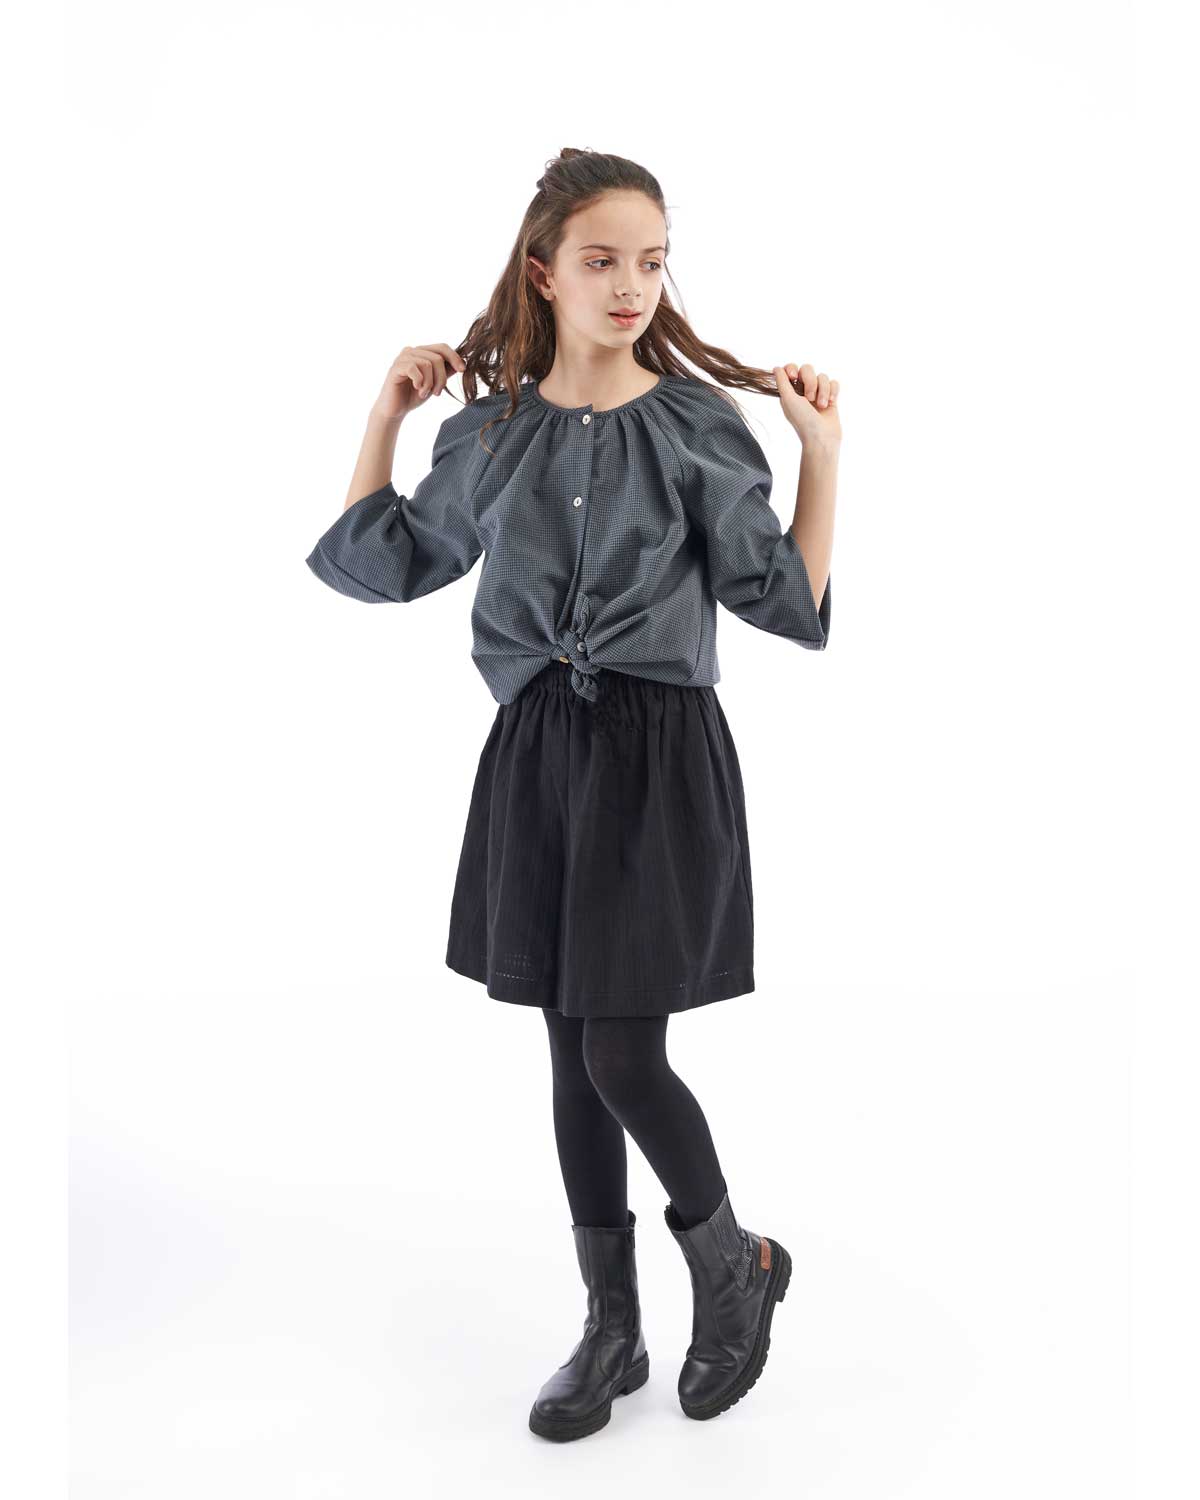 Falda de niña Mishti en color negro con frunce en la cintura